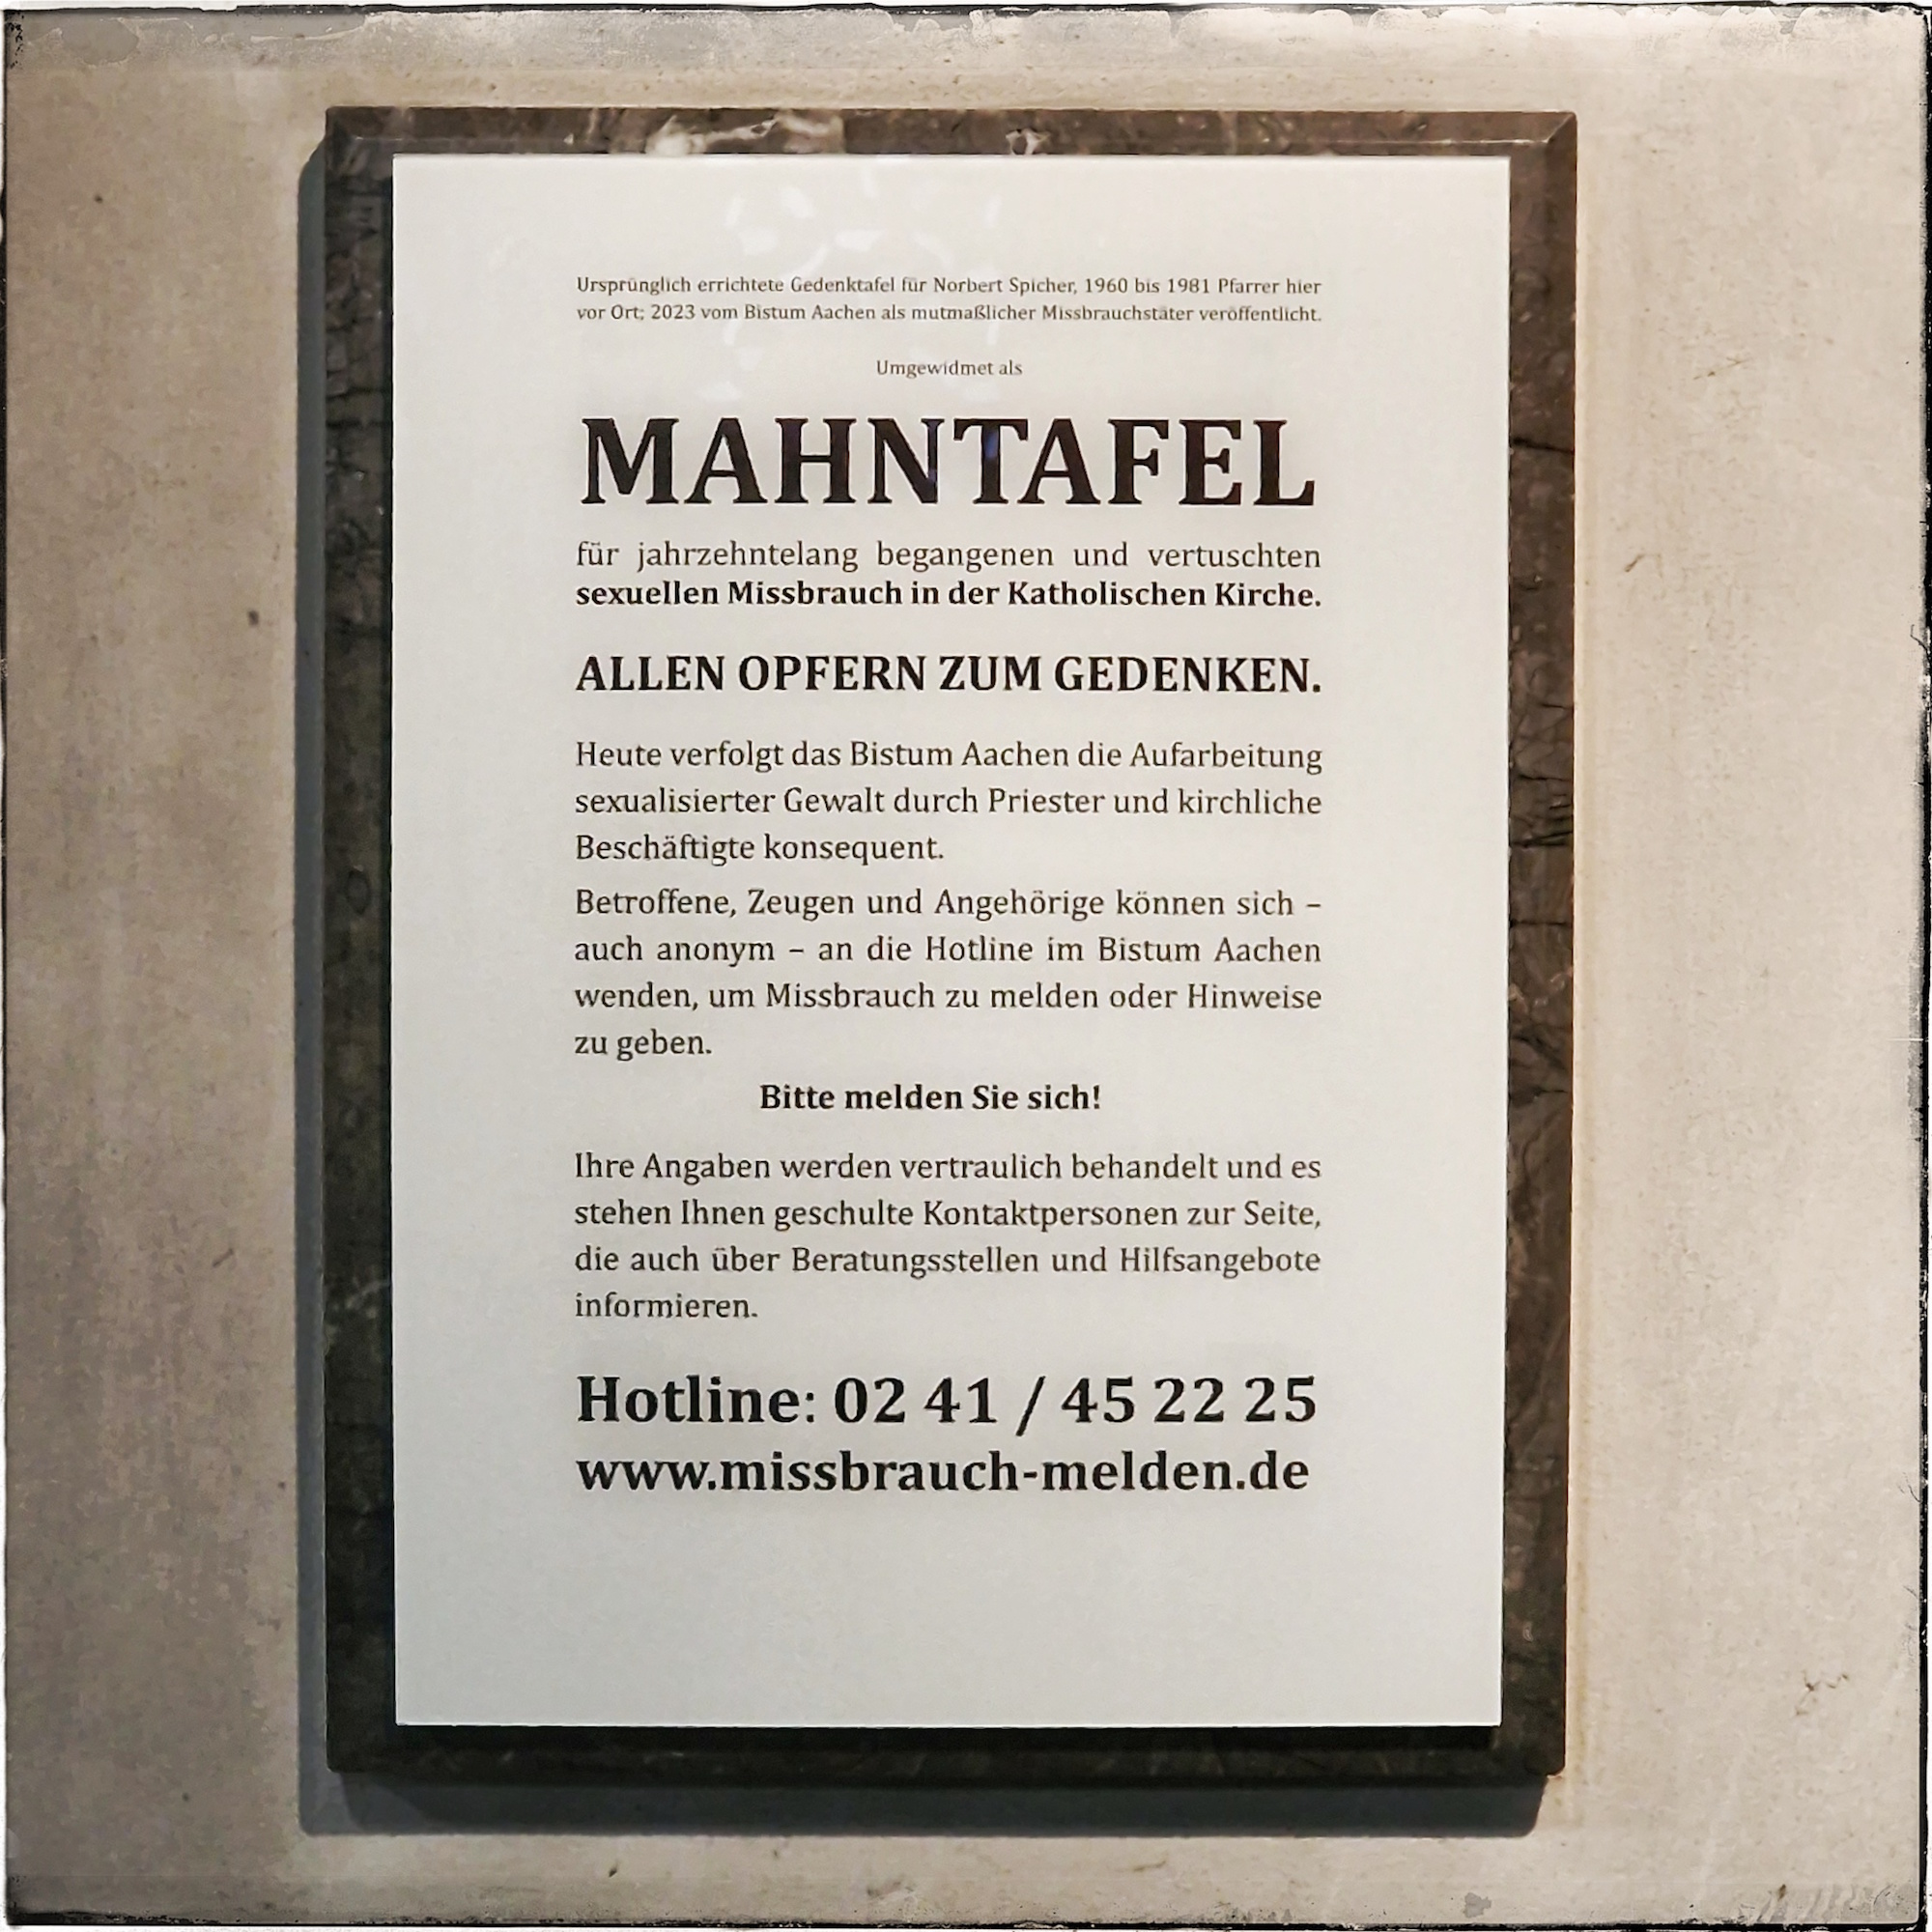 Anstelle der Gedenktafel für Norbert Spicher hängt in der Kämpchener Kirche nun eine Mahntafel (Text siehe oben) für die Opfer mit dem Aufruf, sich zu melden. (c) Franz-Josef Wolf